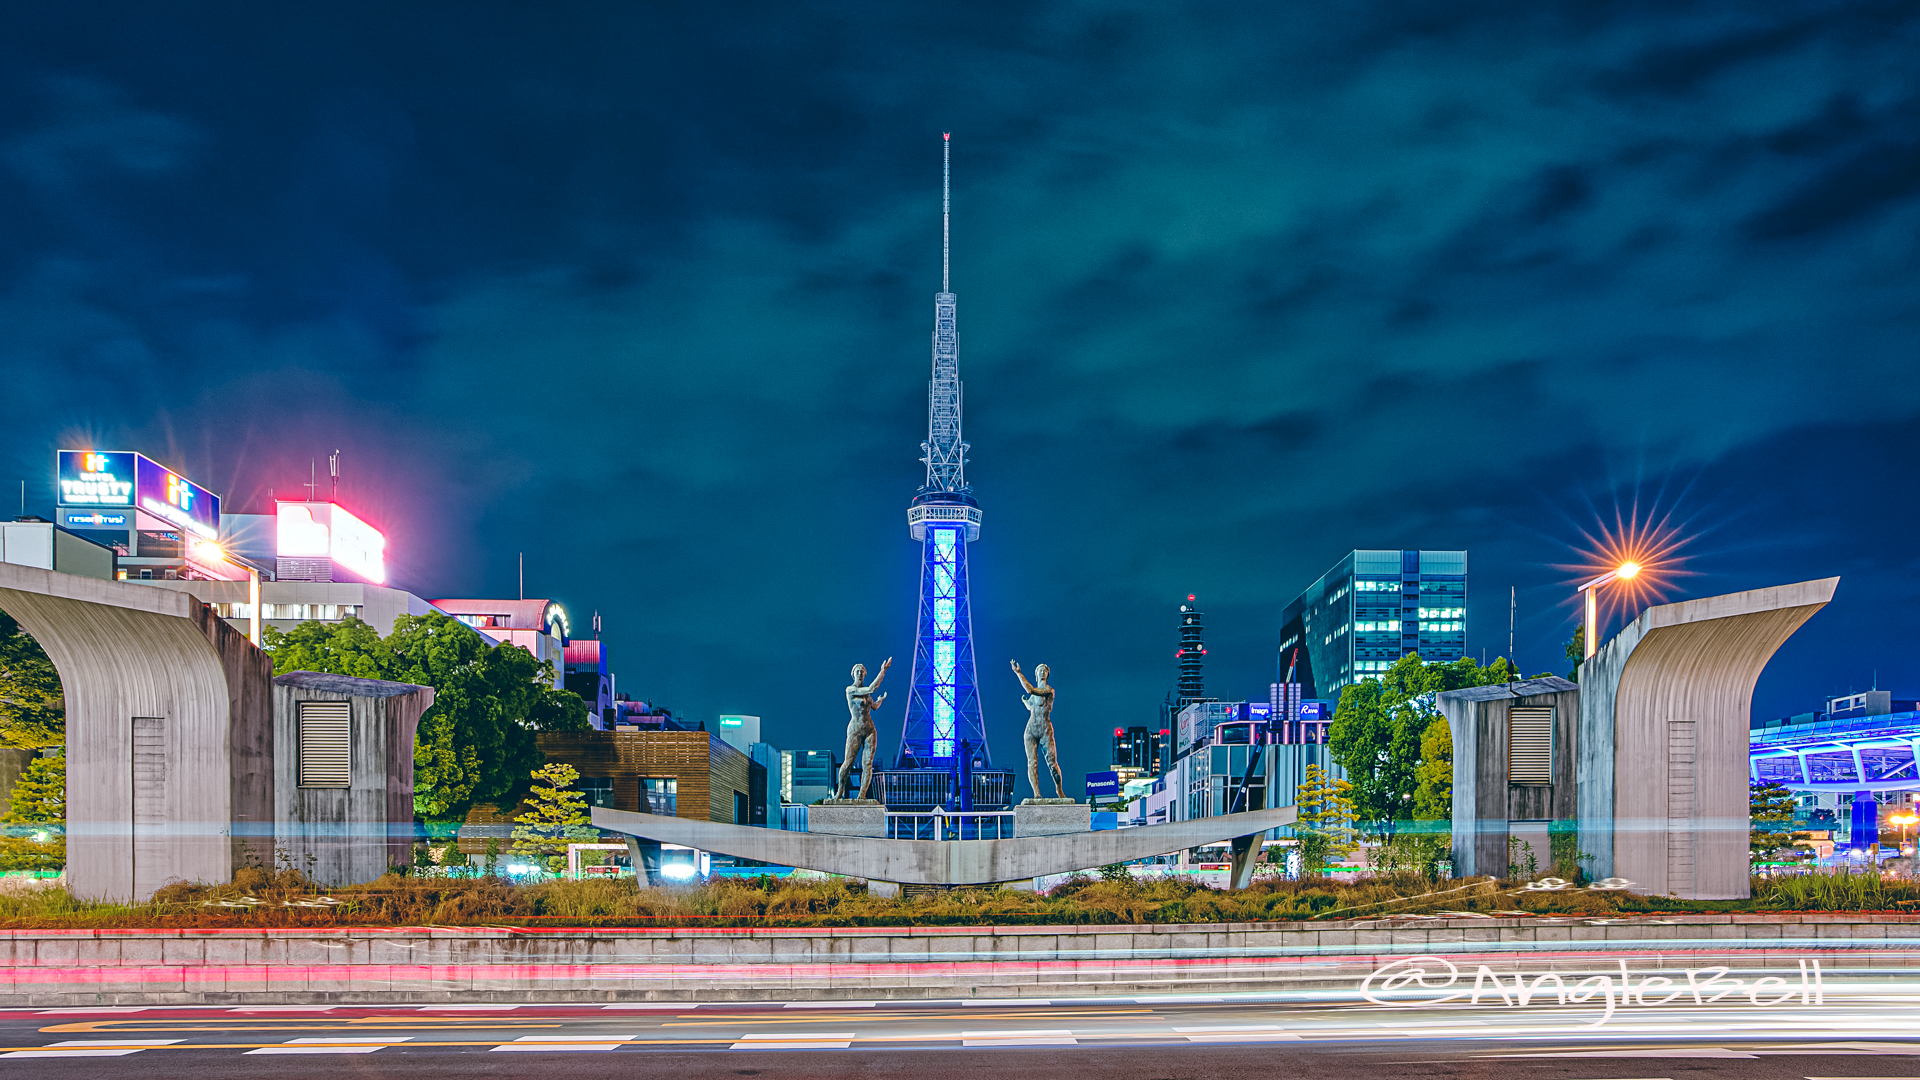 名古屋テレビ塔 (ブルーライトアップ)と双身像 May 2020